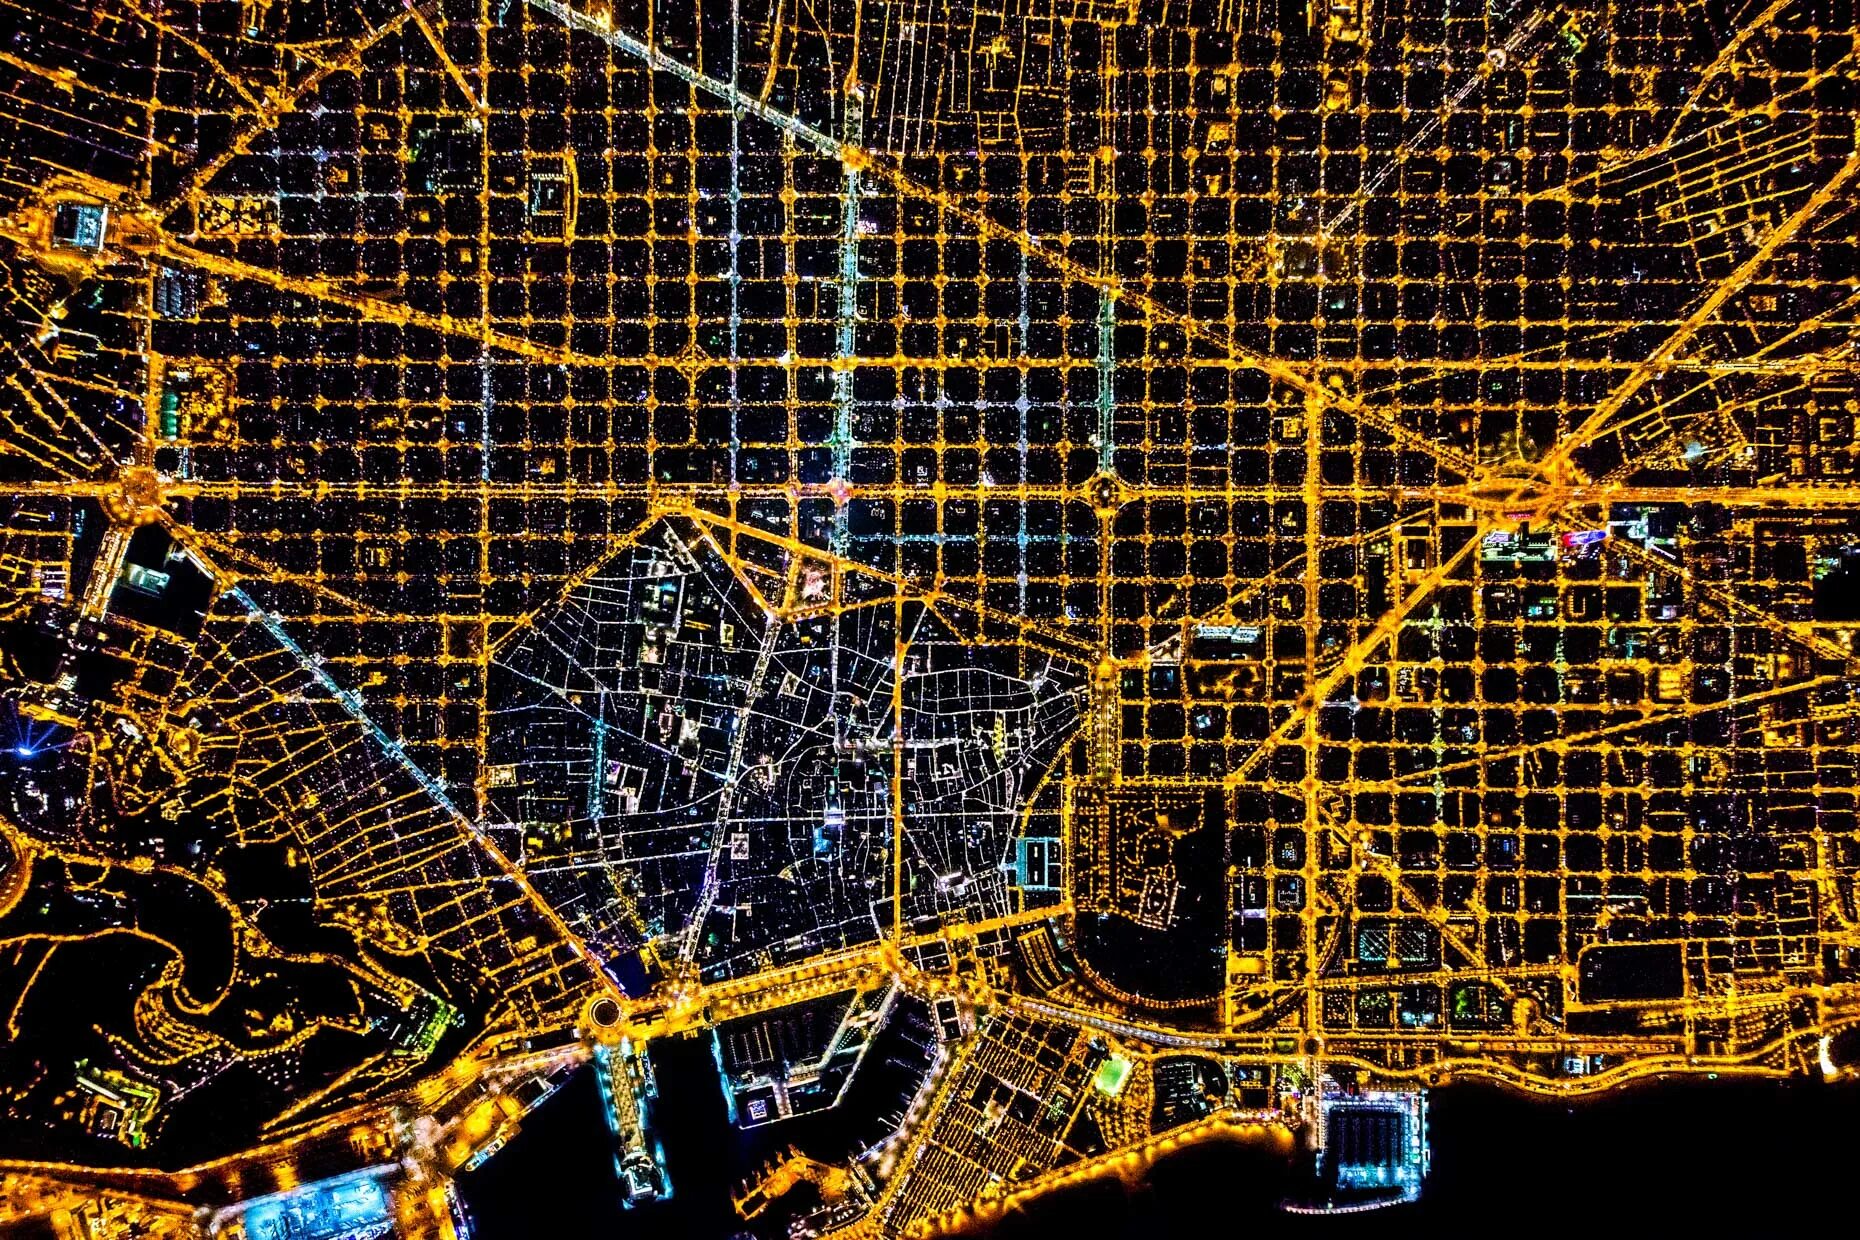 Бит сверху. Ночной город сверху. Барселона вид из космоса. Барселона вид сверху ночью. План города.